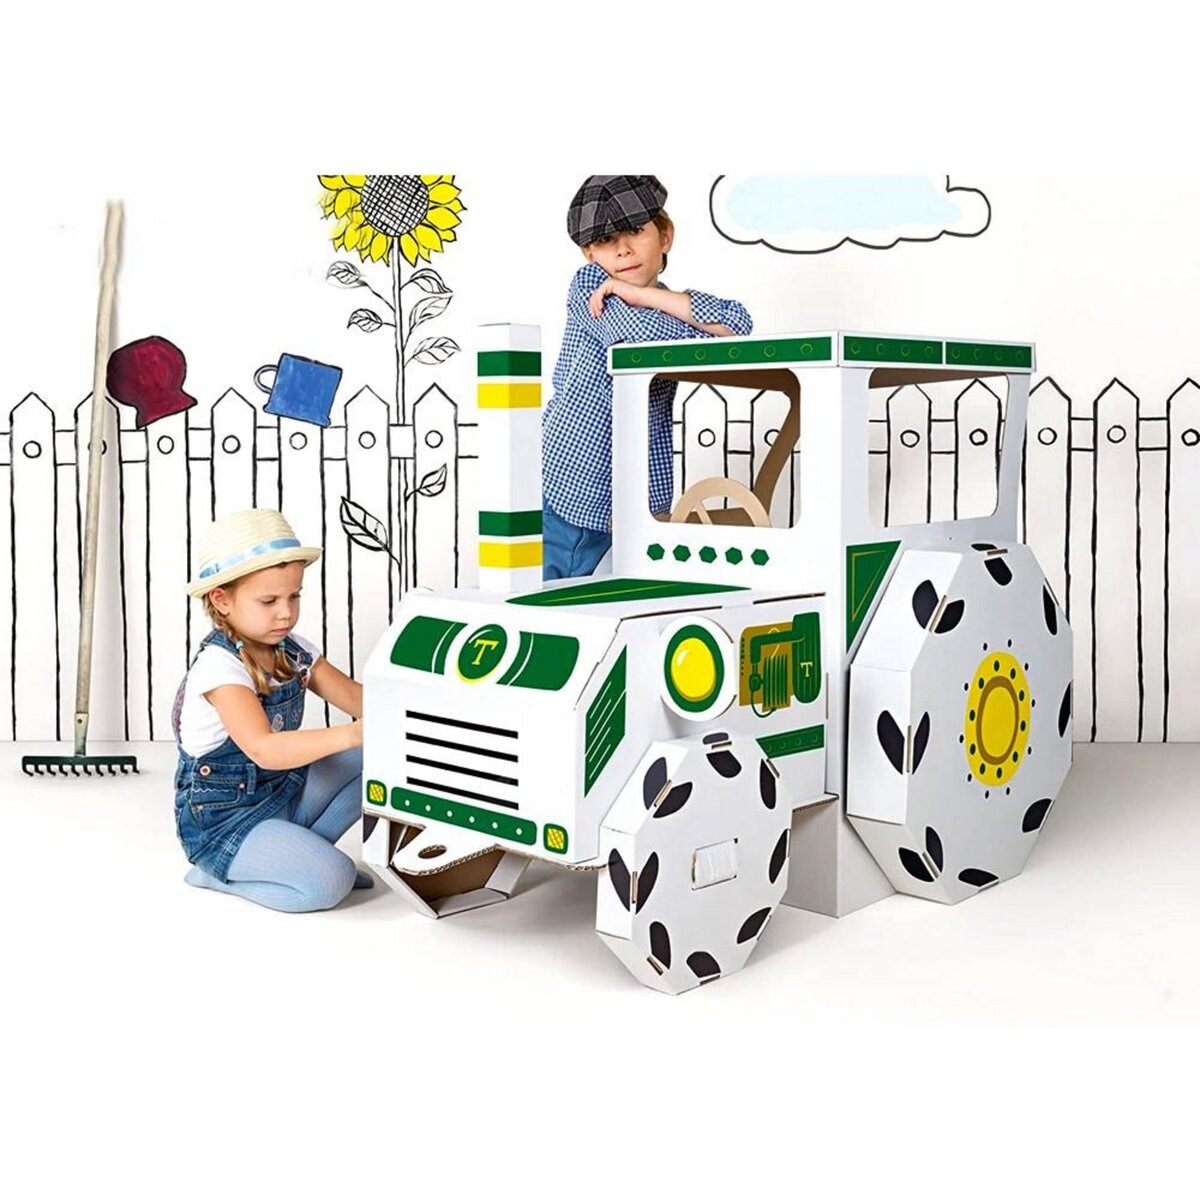 XXL Grand tracteur a peindre colorier maison carton jouet enfant pas cher 